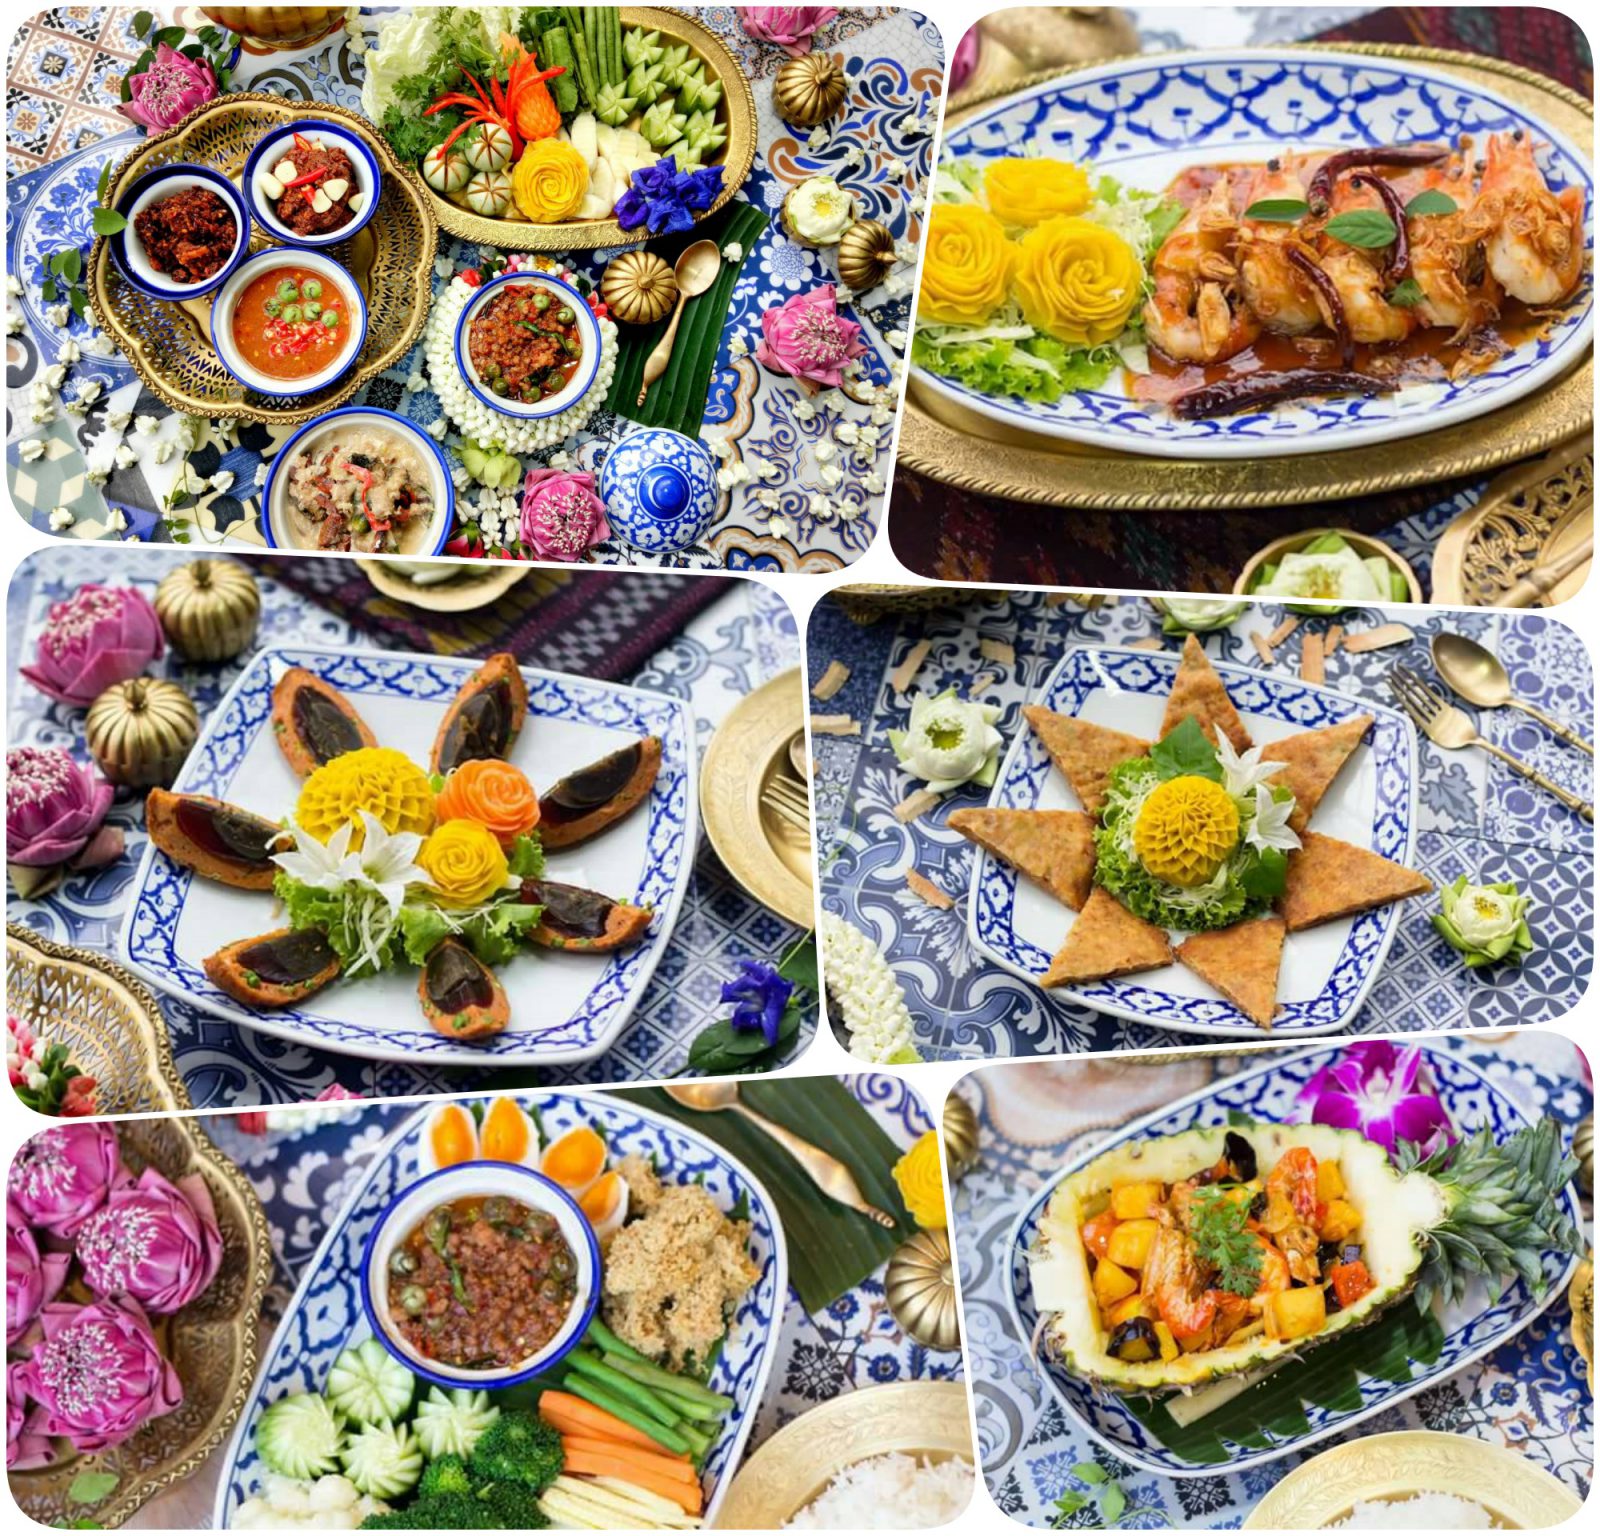 ชุดเครื่องใช้ทองเหลืองไทย เครื่องครัวทองเหลือง สวยงาม สำรับอาหารคาวหวาน สร้างสรรค์แบบวิถีไทย +ภาพสวย Cr.Panupon